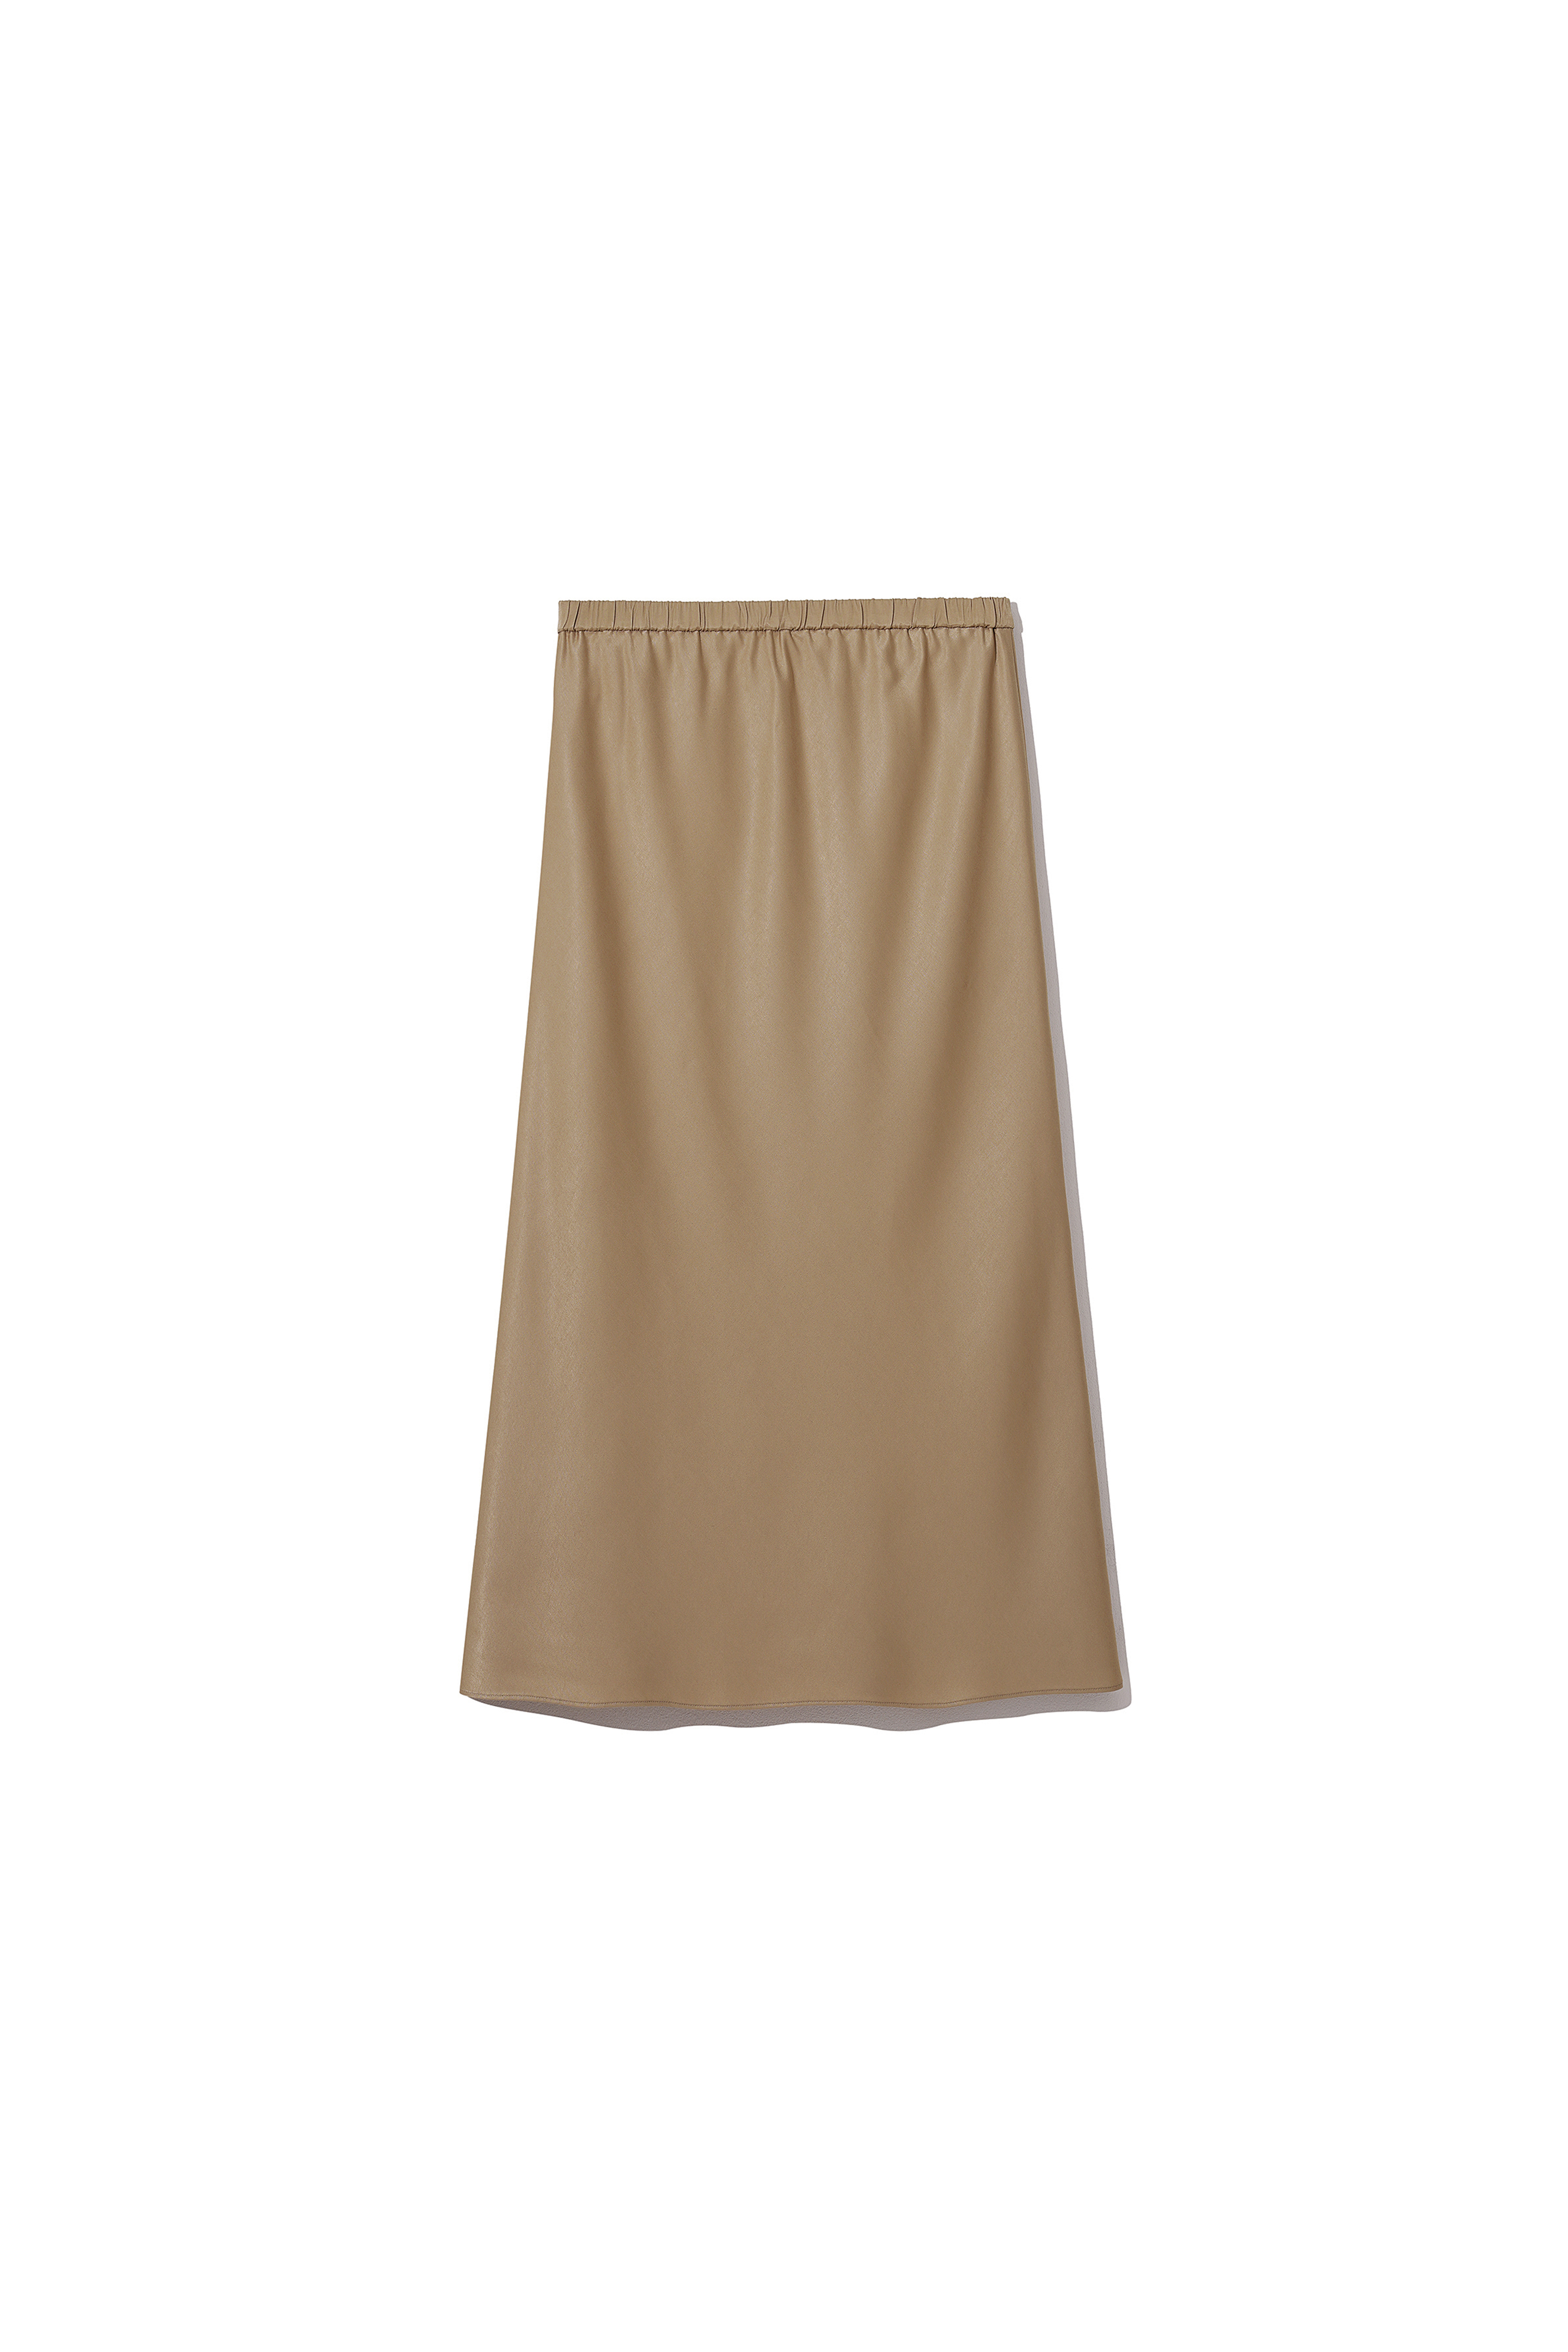 Besset Skirt Gold